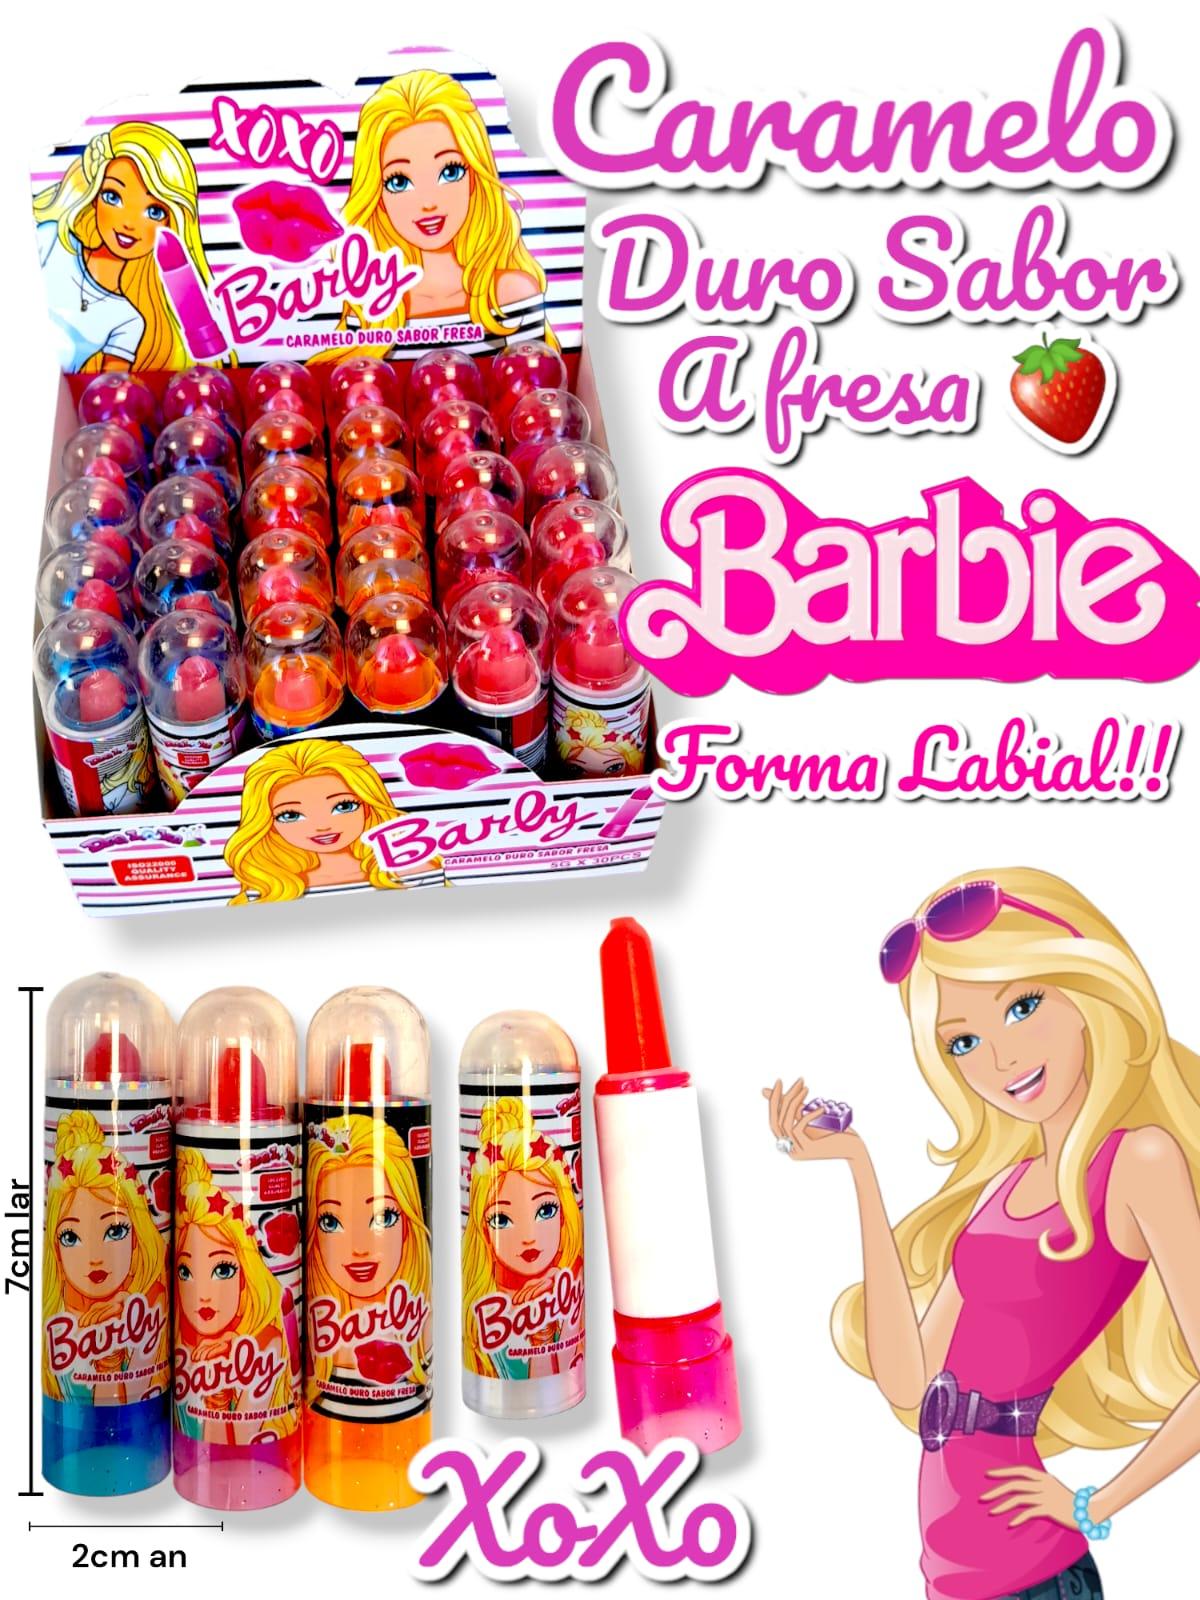 Caramelo Duro Sabor A fresa Barbie Forma Labial 